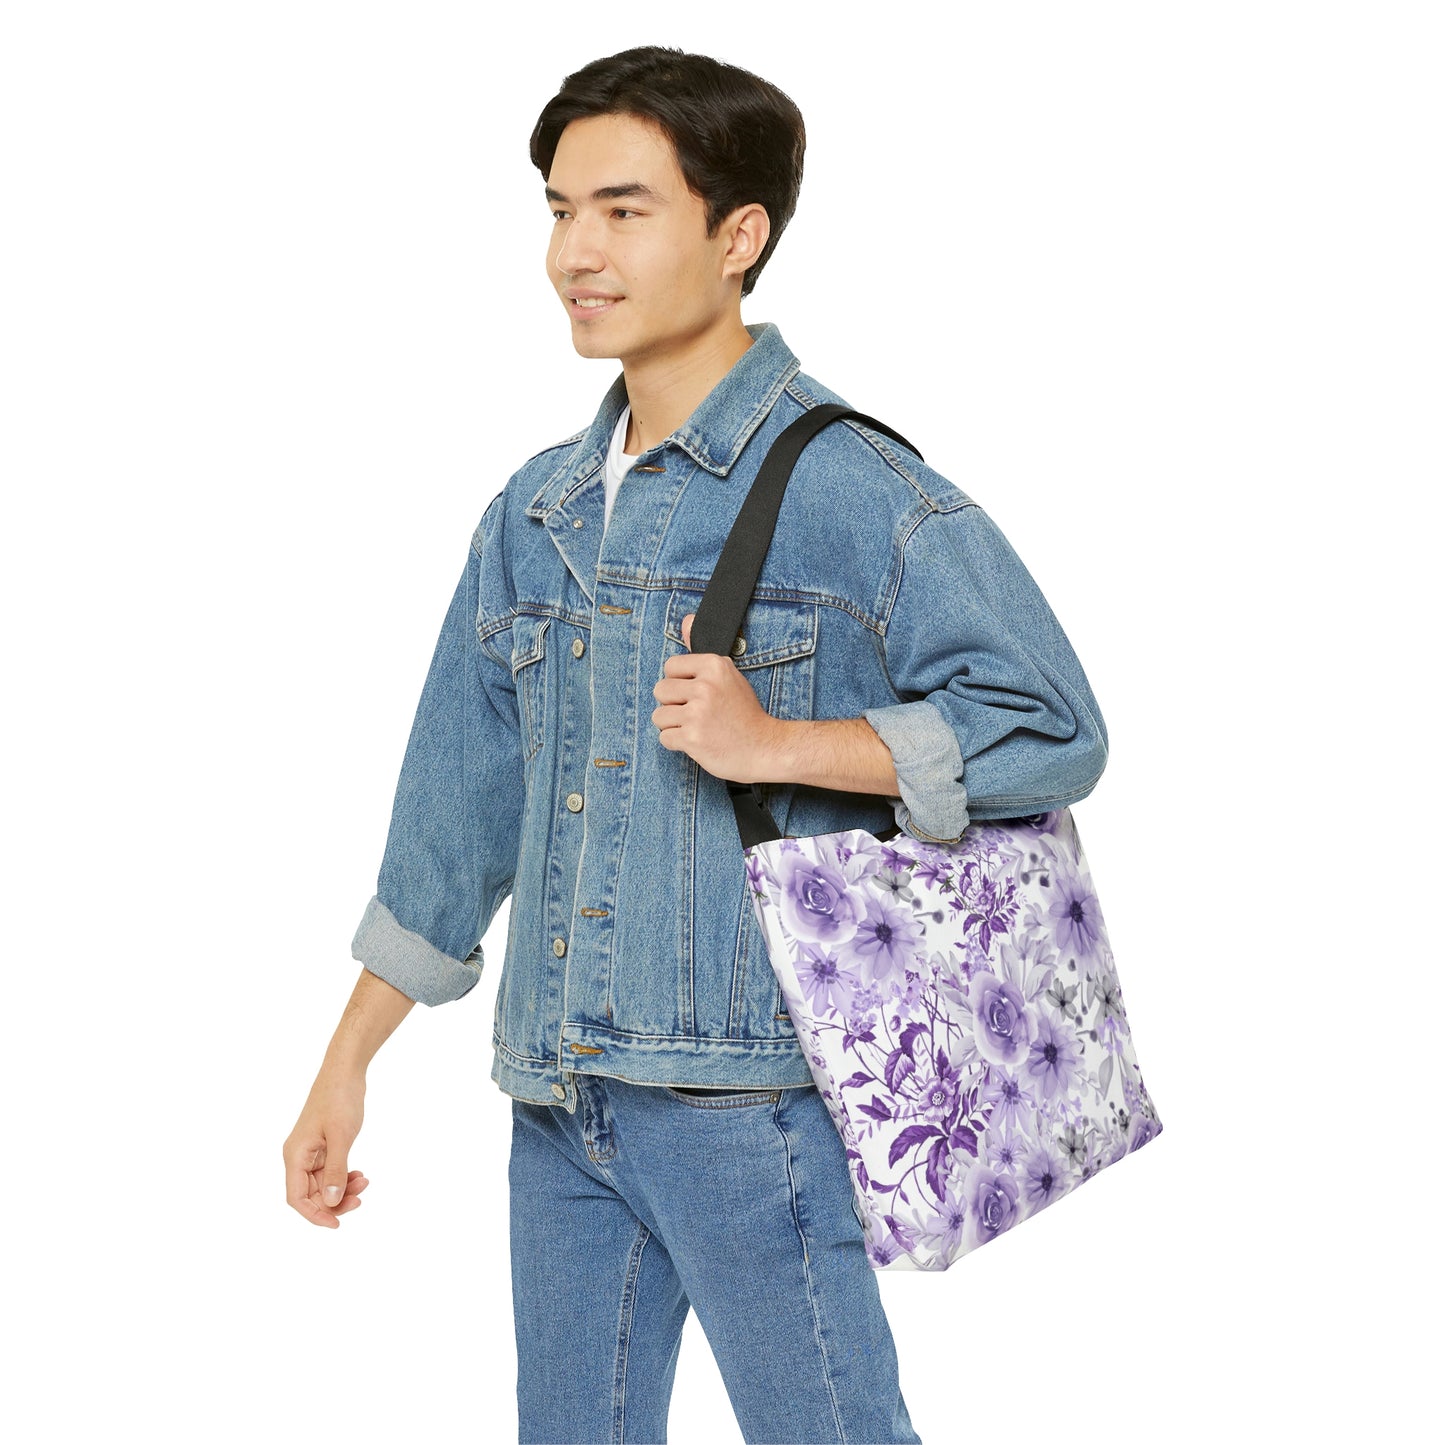 Purple Crossbody Bag / Floral Tote Bag